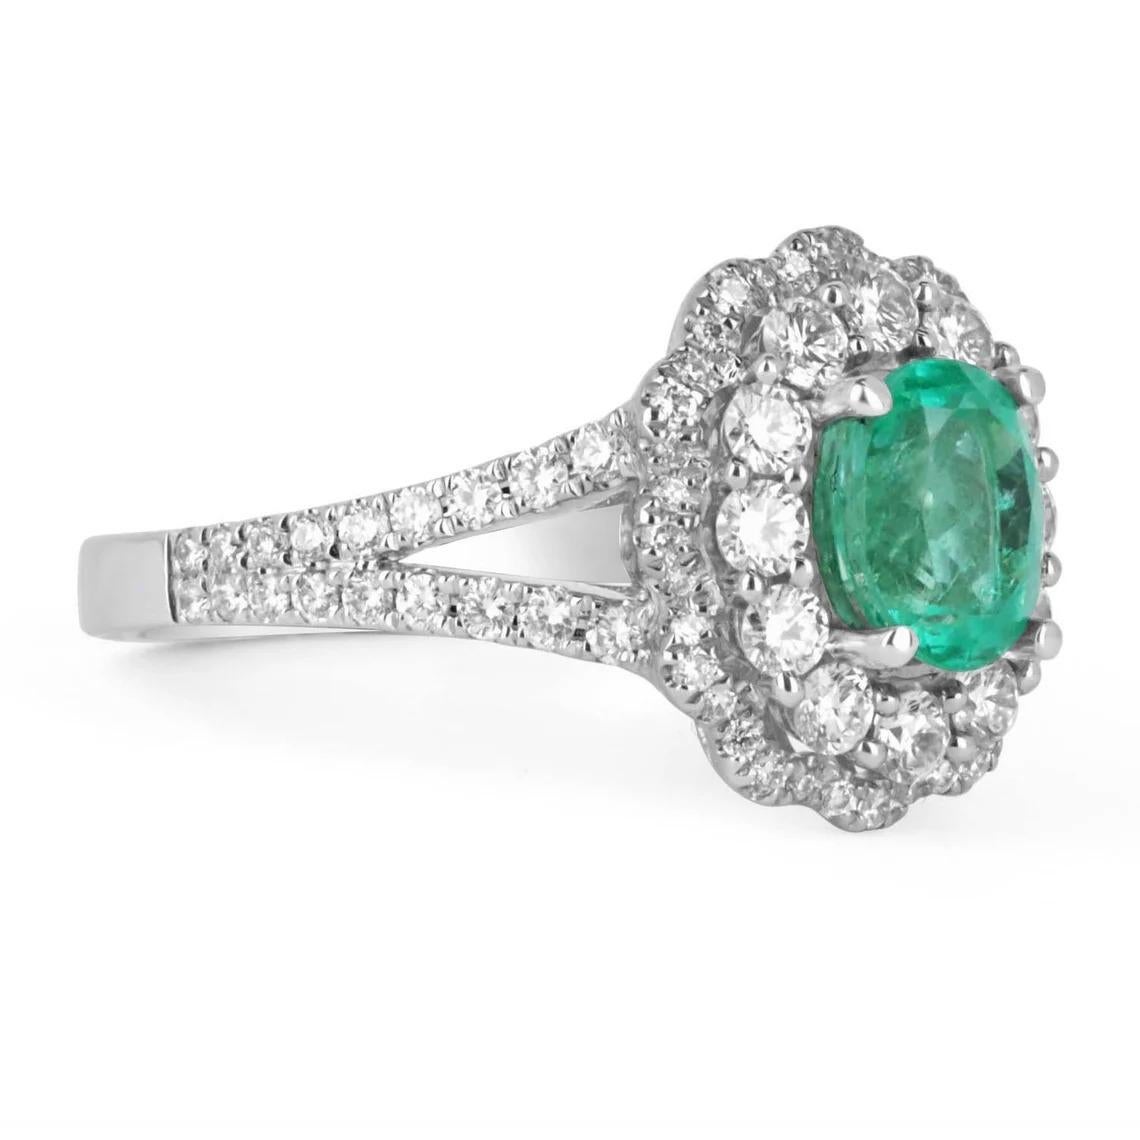 Gezeigt wird ein prächtiger 2,10 tcw natürlicher kolumbianischer Smaragd und Diamant Doppel-Halo-Cocktail-Goldring. Dies ist ein perfekter Statement-Ring mit einem prächtigen Mittelstein. Der zentrale Edelstein ist ein hochwertiger Muzo-Smaragd in